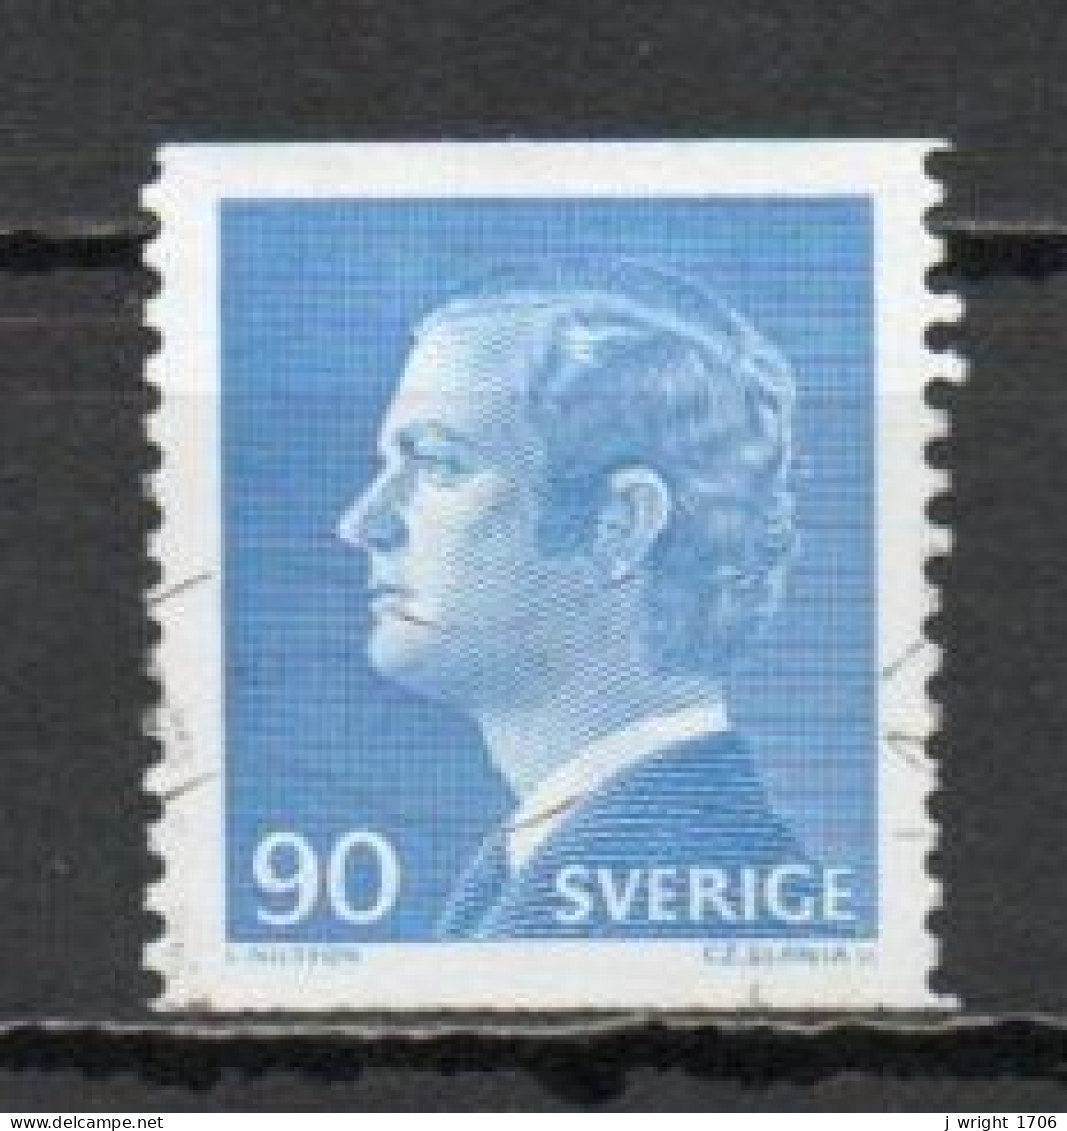 Sweden, 1975, King Carl XVI Gustaf, 90ö/Perf 2 Sides, USED - Usados